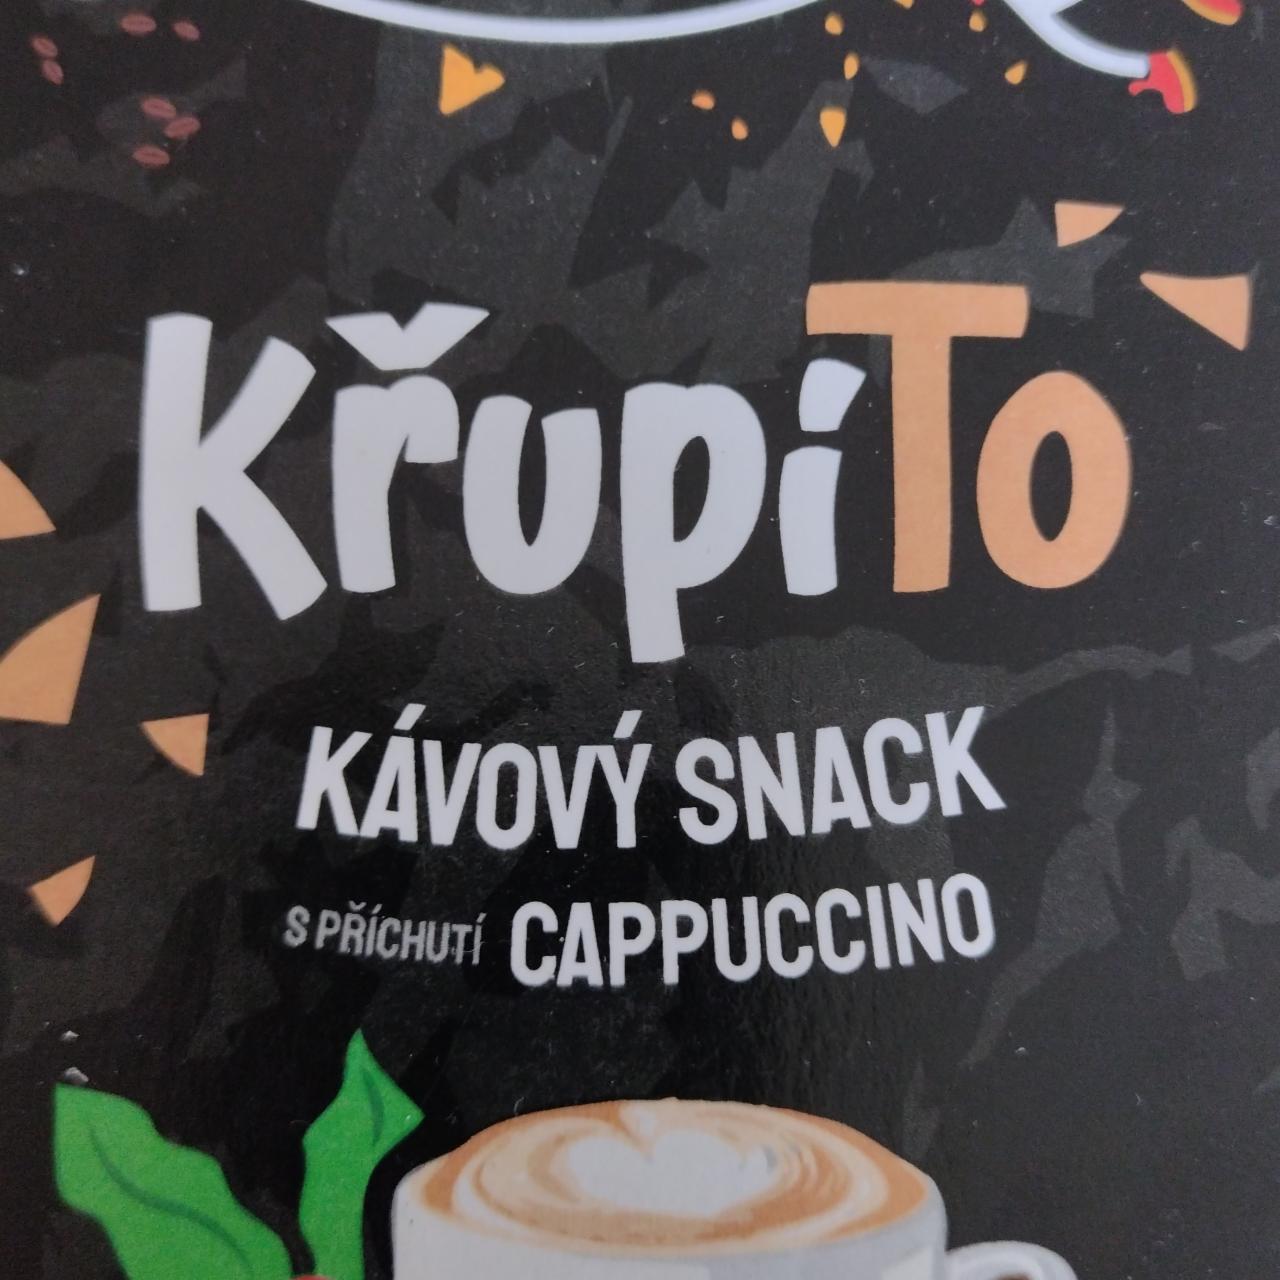 Fotografie - Kávový snack s příchutí cappuccino KřupíTo